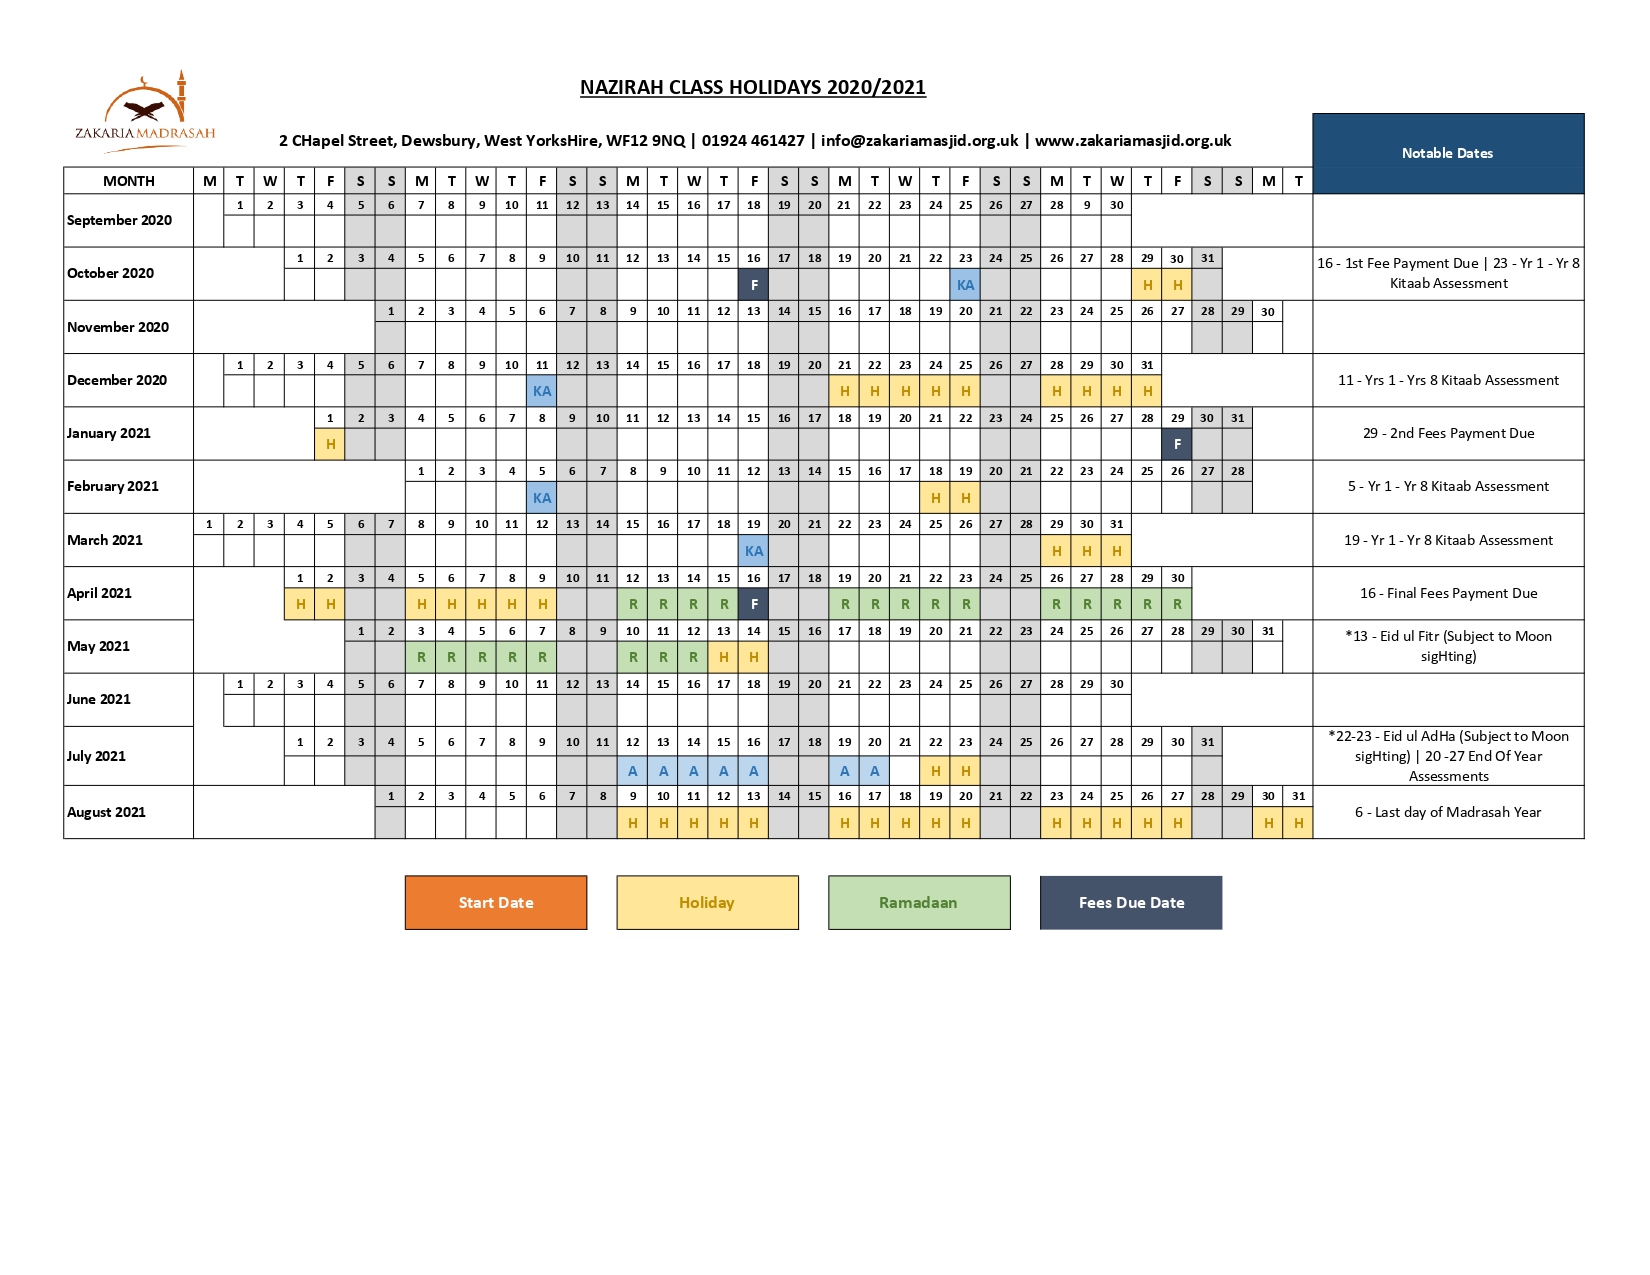 karimia institute namaz timetable 2020